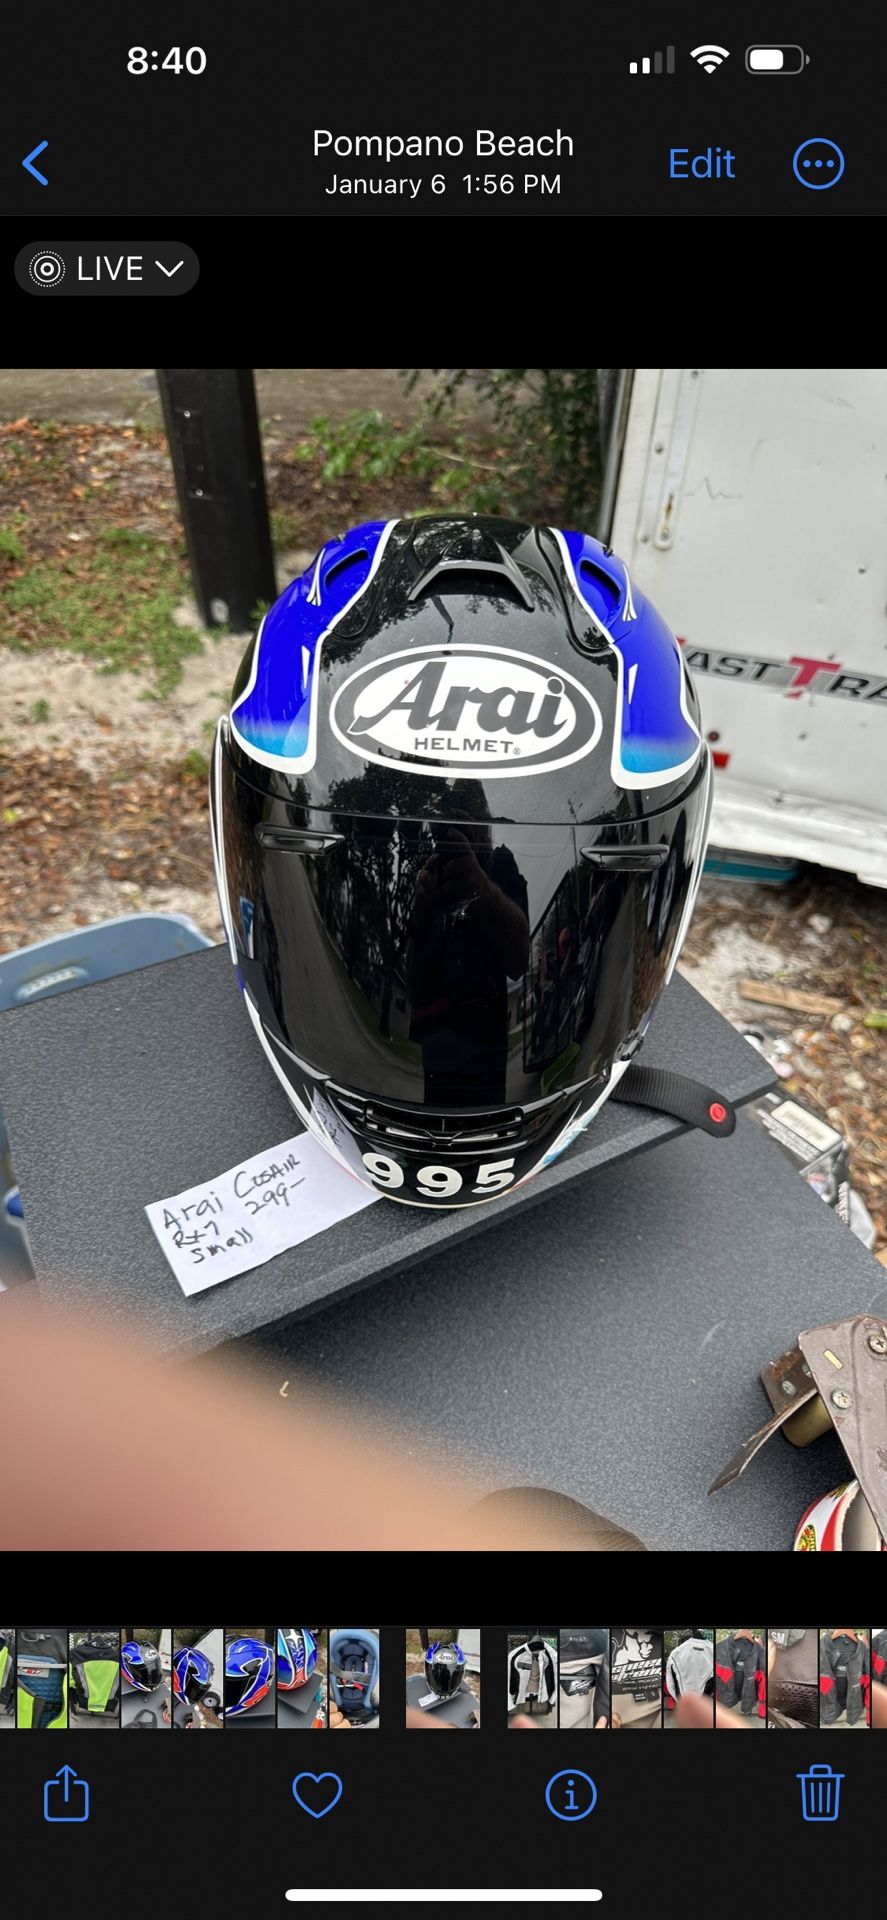 Arai helmet, new motorcycle helmet Retail list is 599.